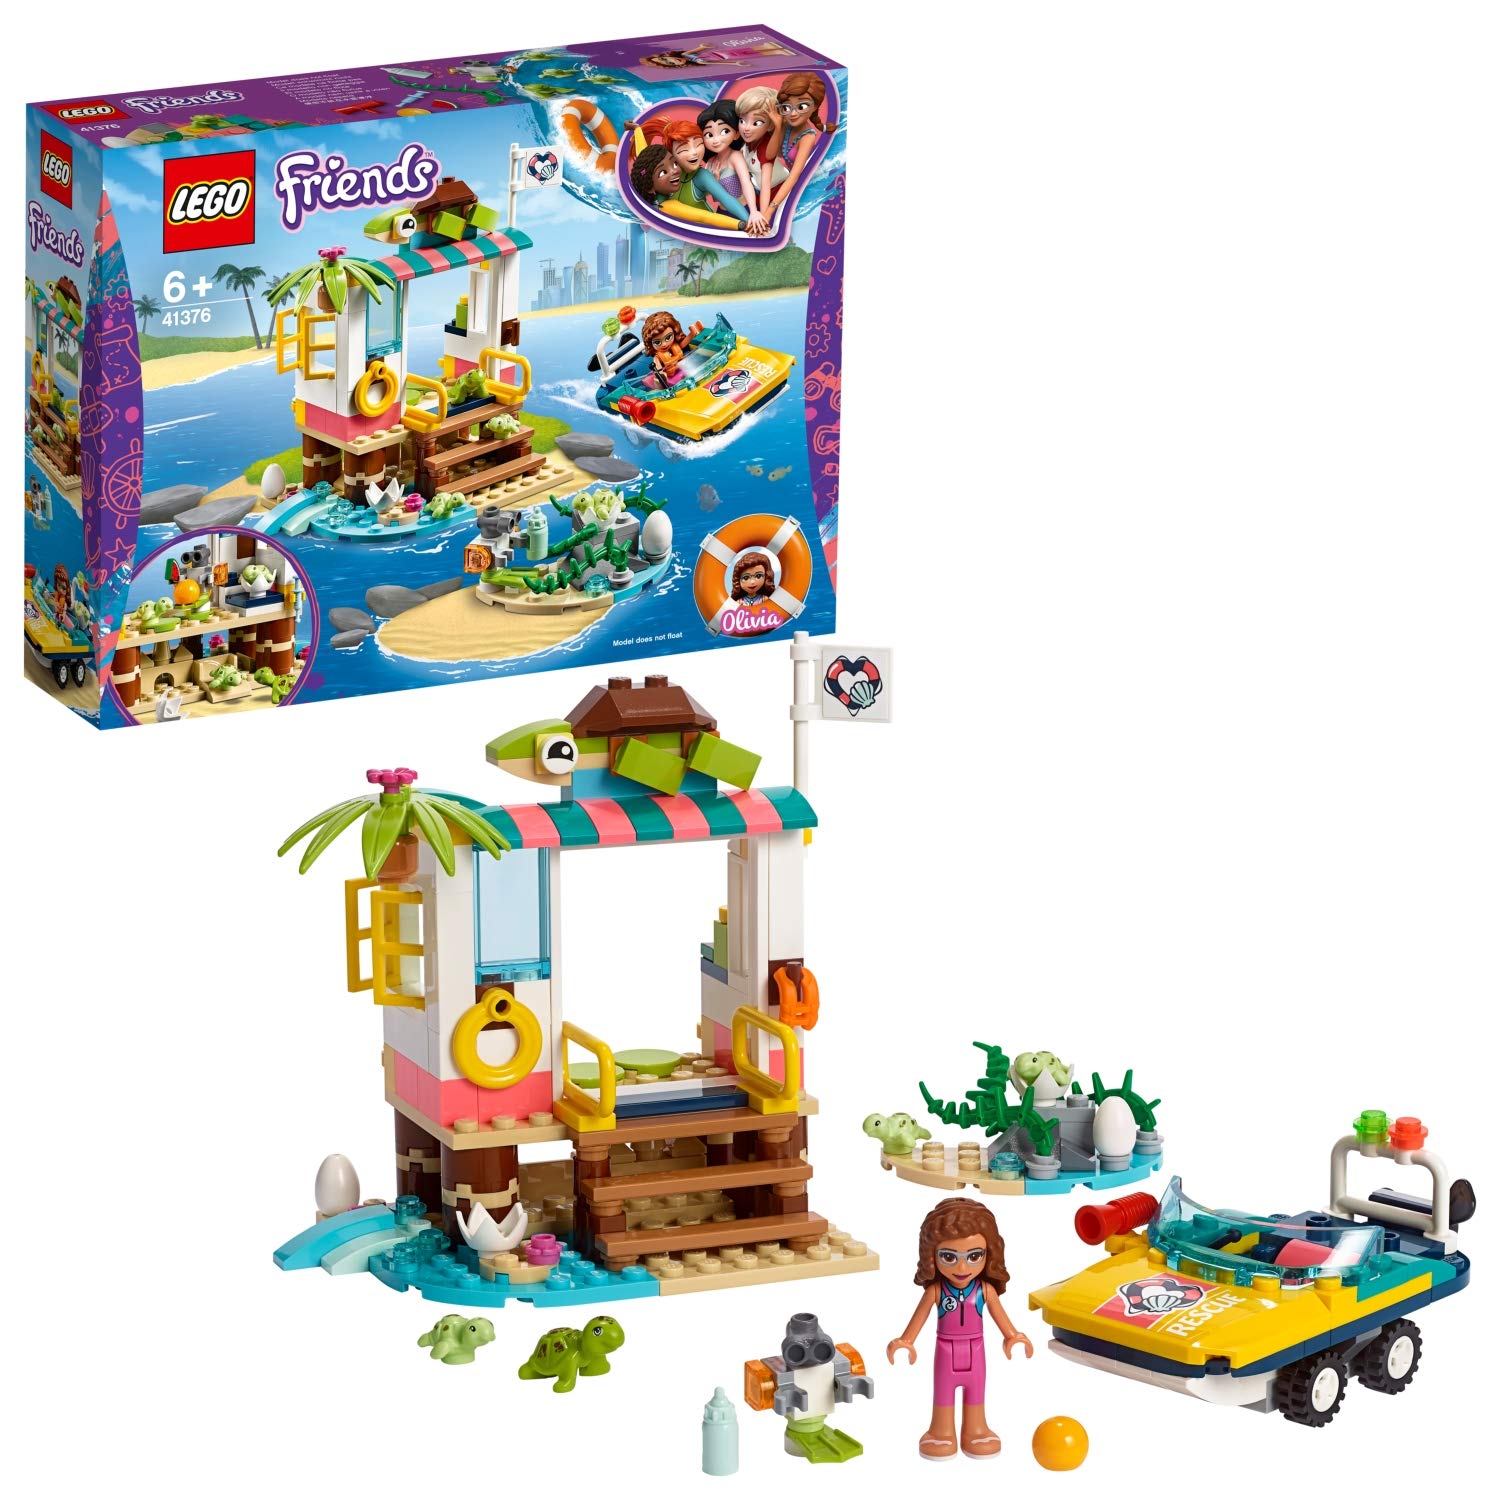 Lego 41376 - Friends Turtle Rescue Station Building Set